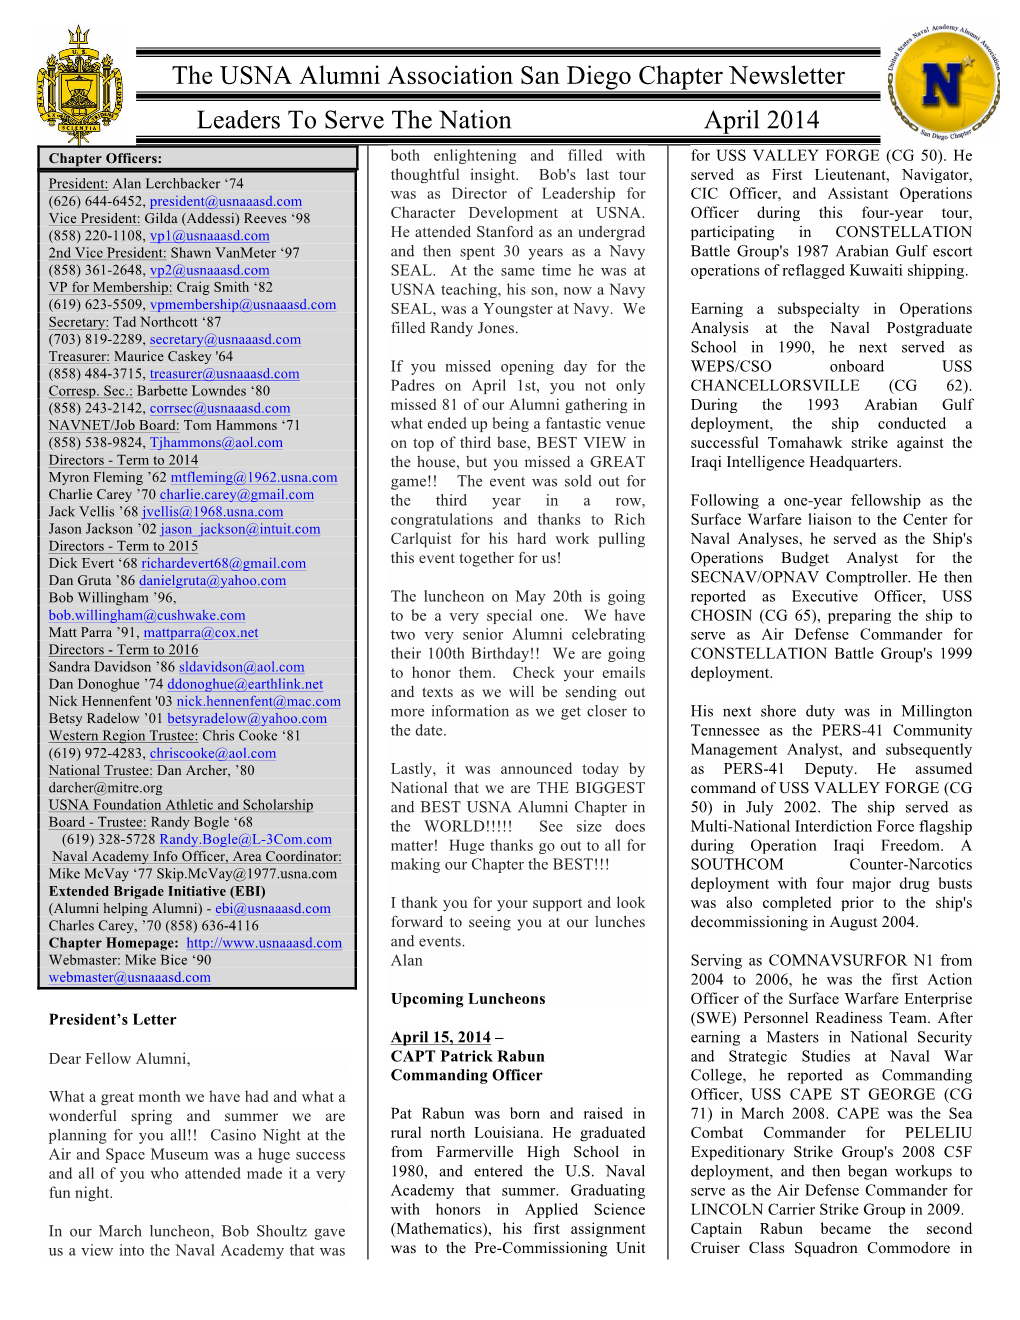 USNA Newsletter April 2014 Final